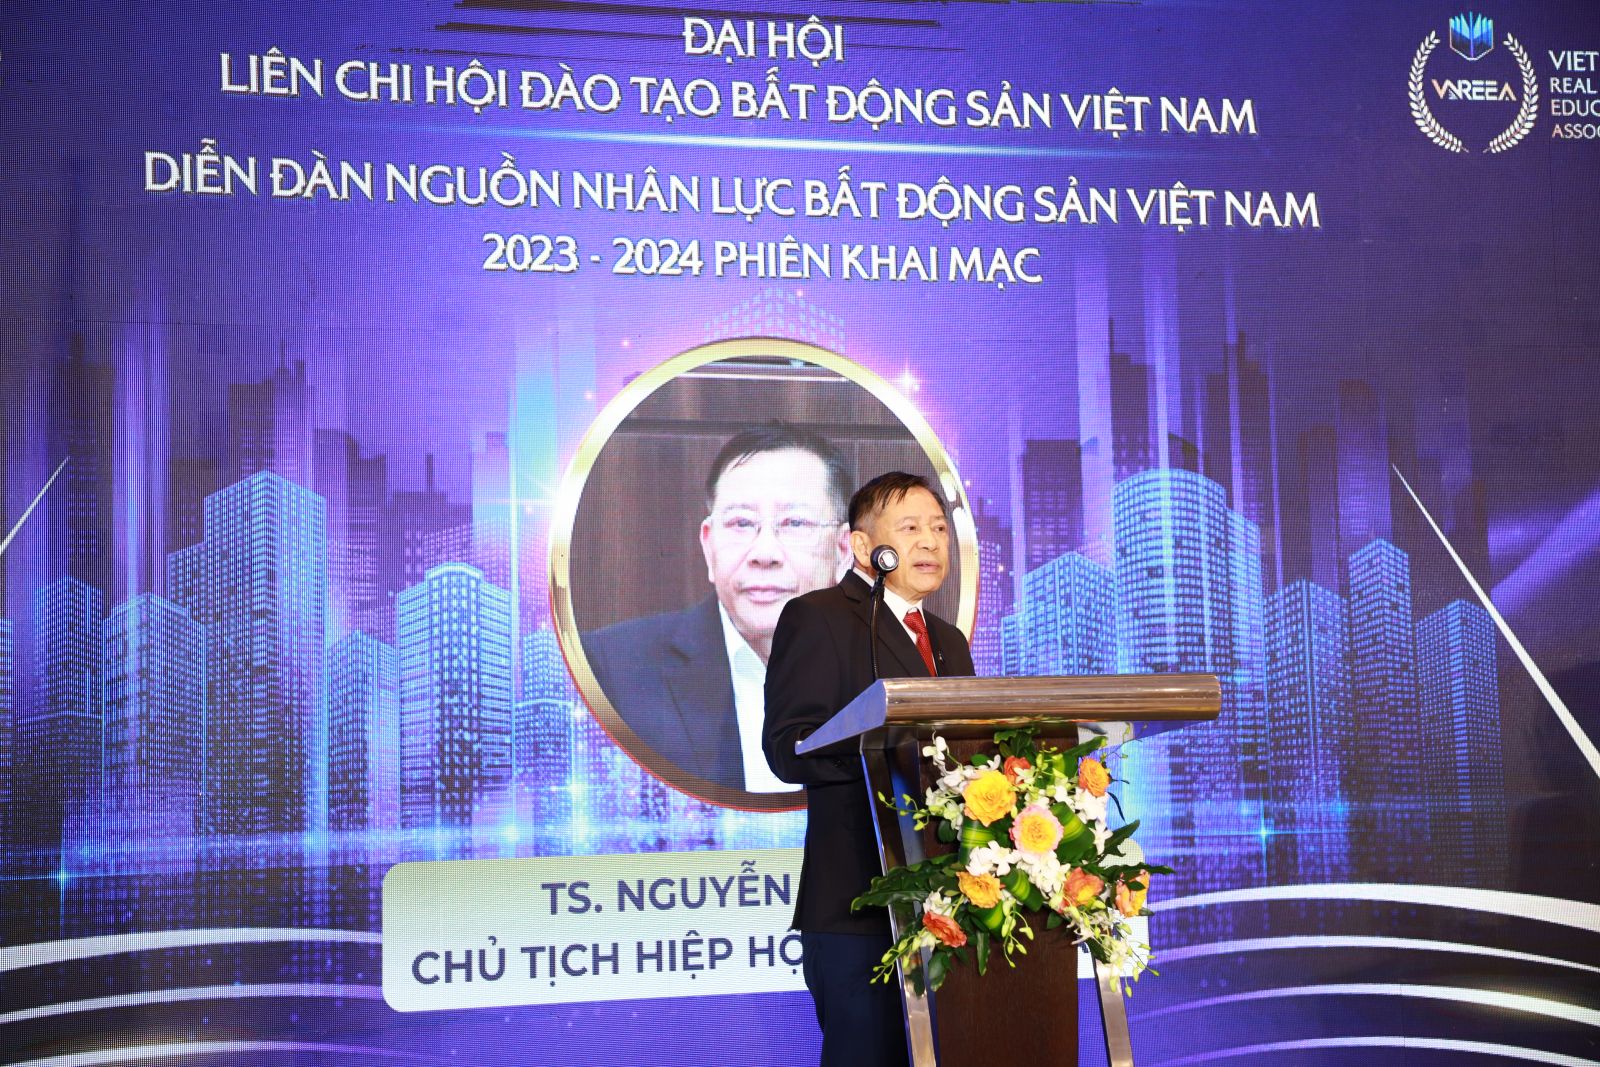 Chính thức ra mắt Liên chi hội Đào tạo Bất động sản Việt Nam (VNREEA)- Ảnh 6.